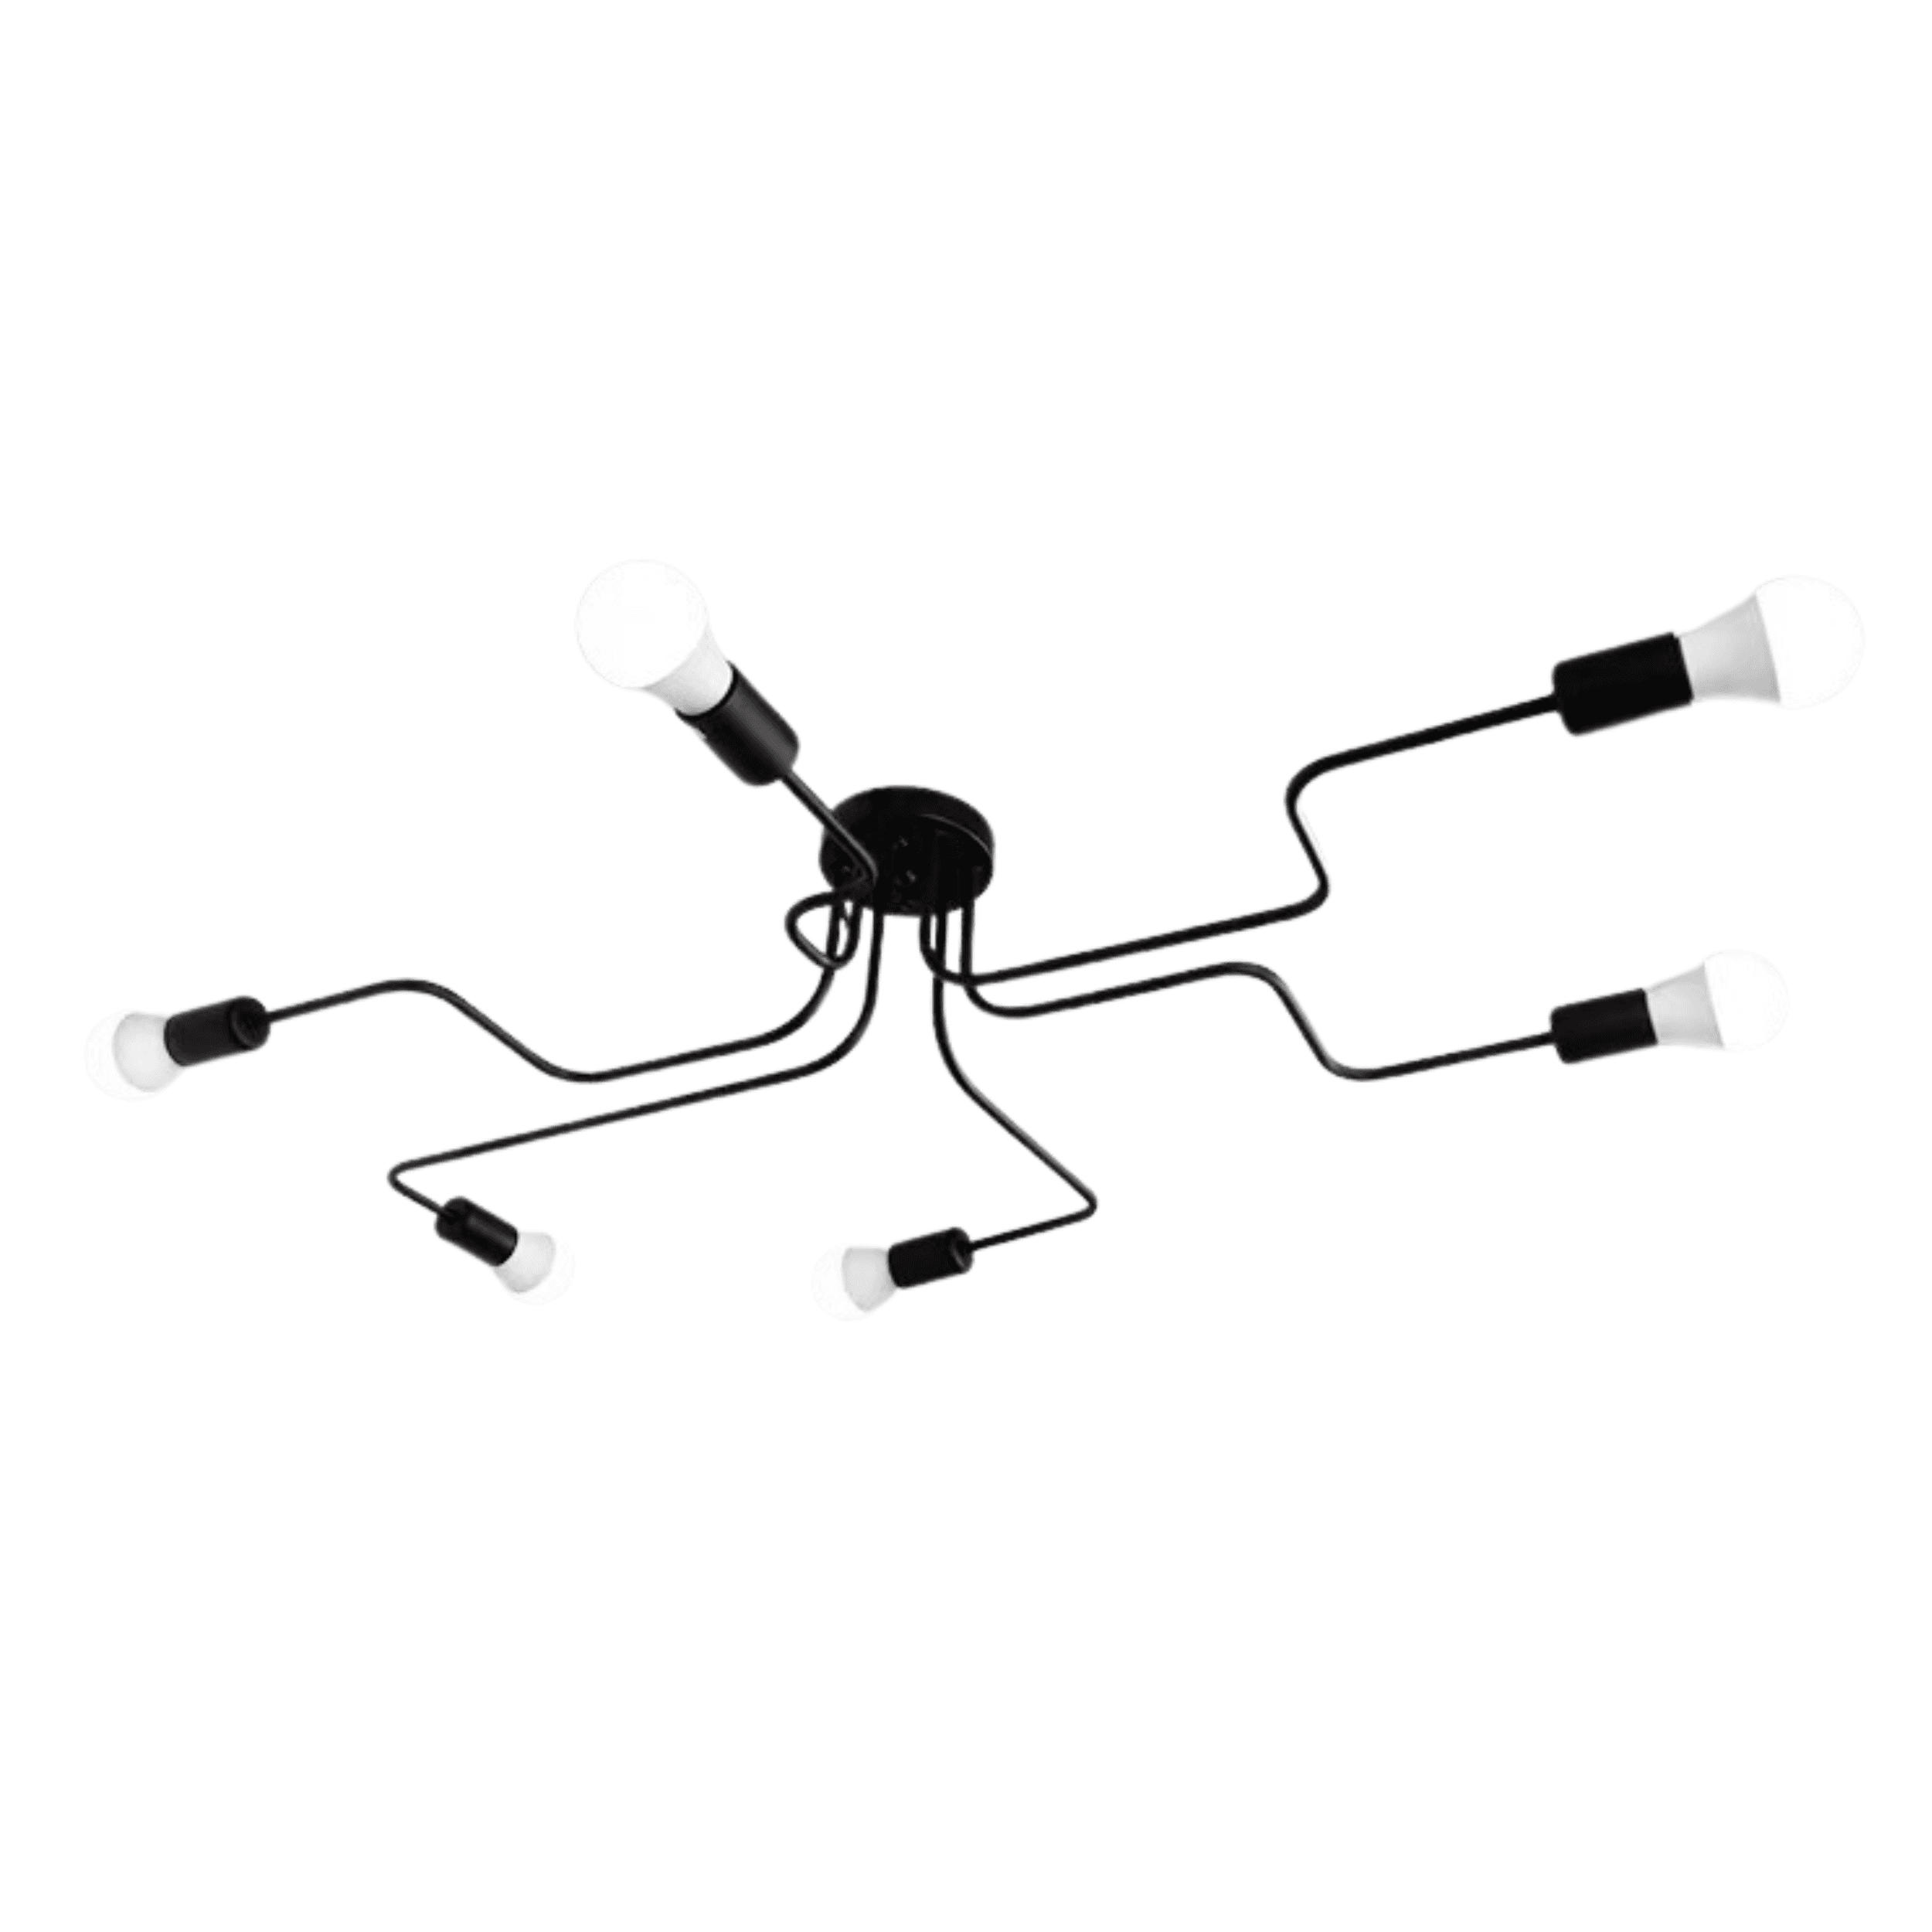 Modern ceiling lamp / Industrial Chandelier - black, 6-armed